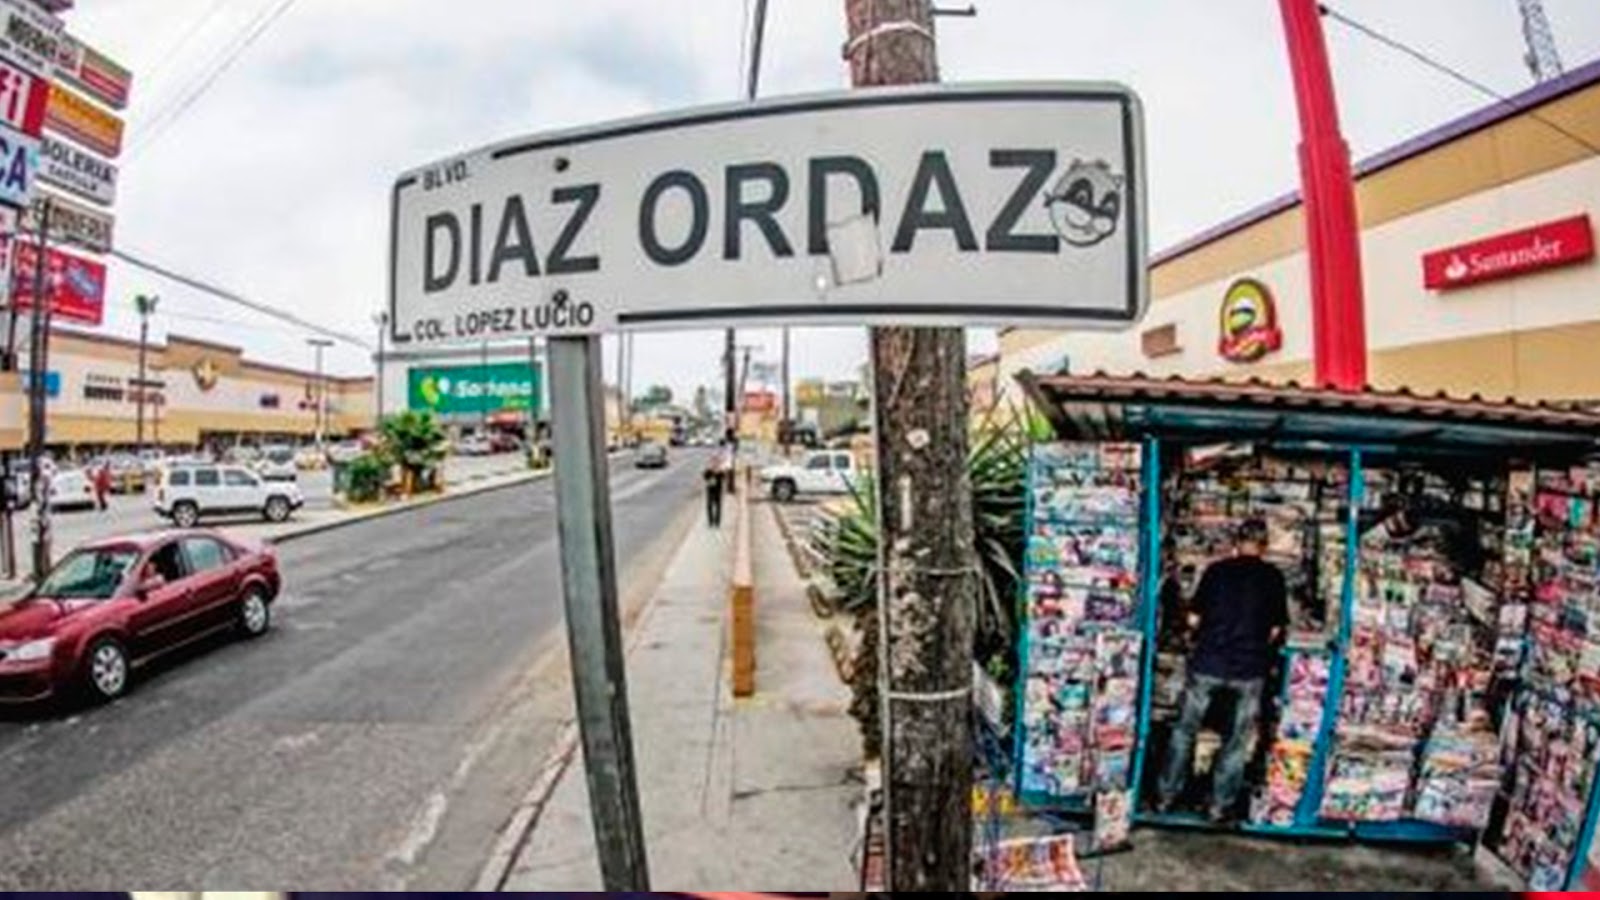 Lanzan convocatoria para quitar nombres de Díaz Ordaz y Echeverría en lugares públicos.